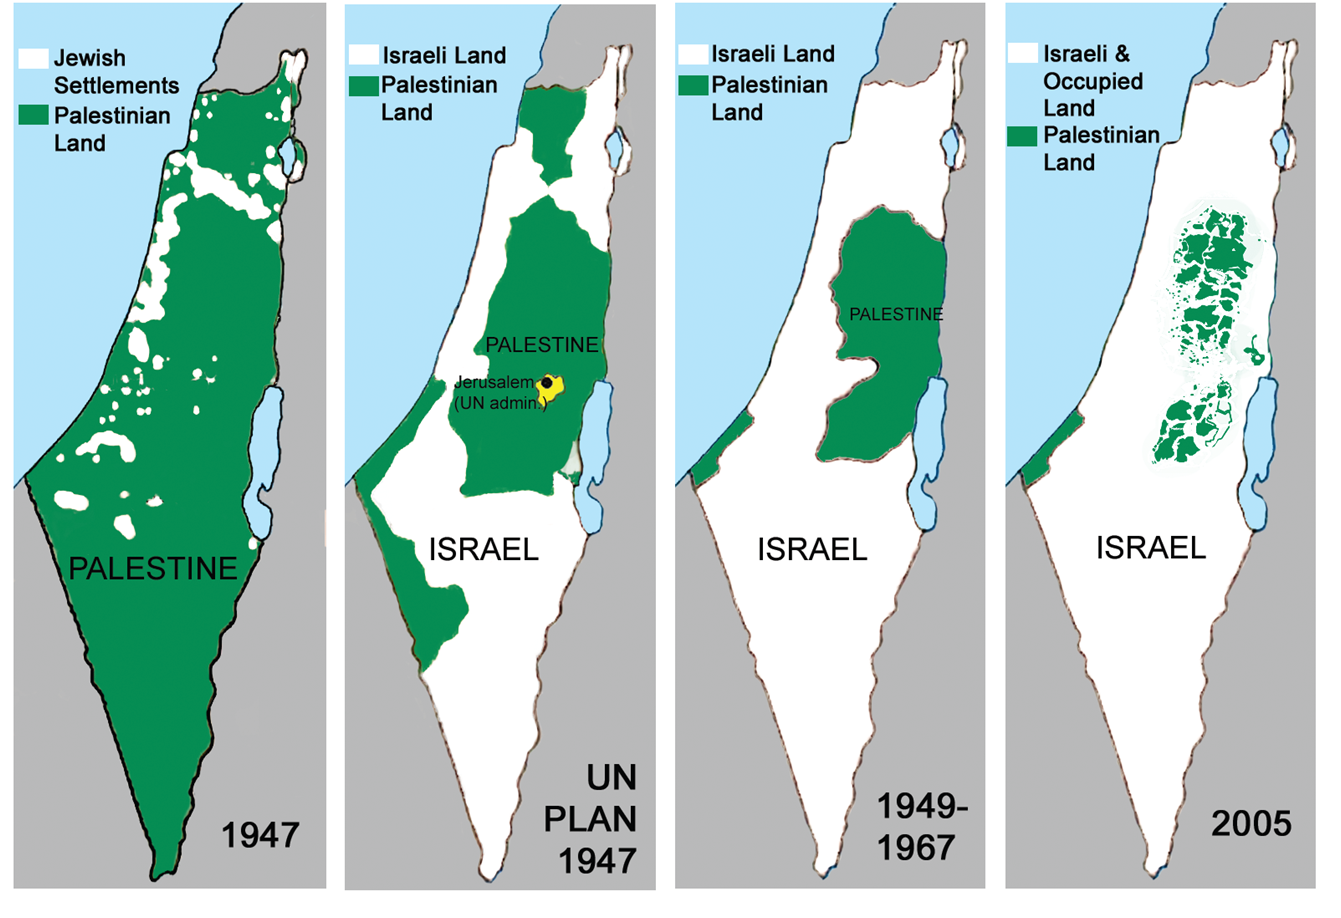 Palestine/Israel is an apartheid state